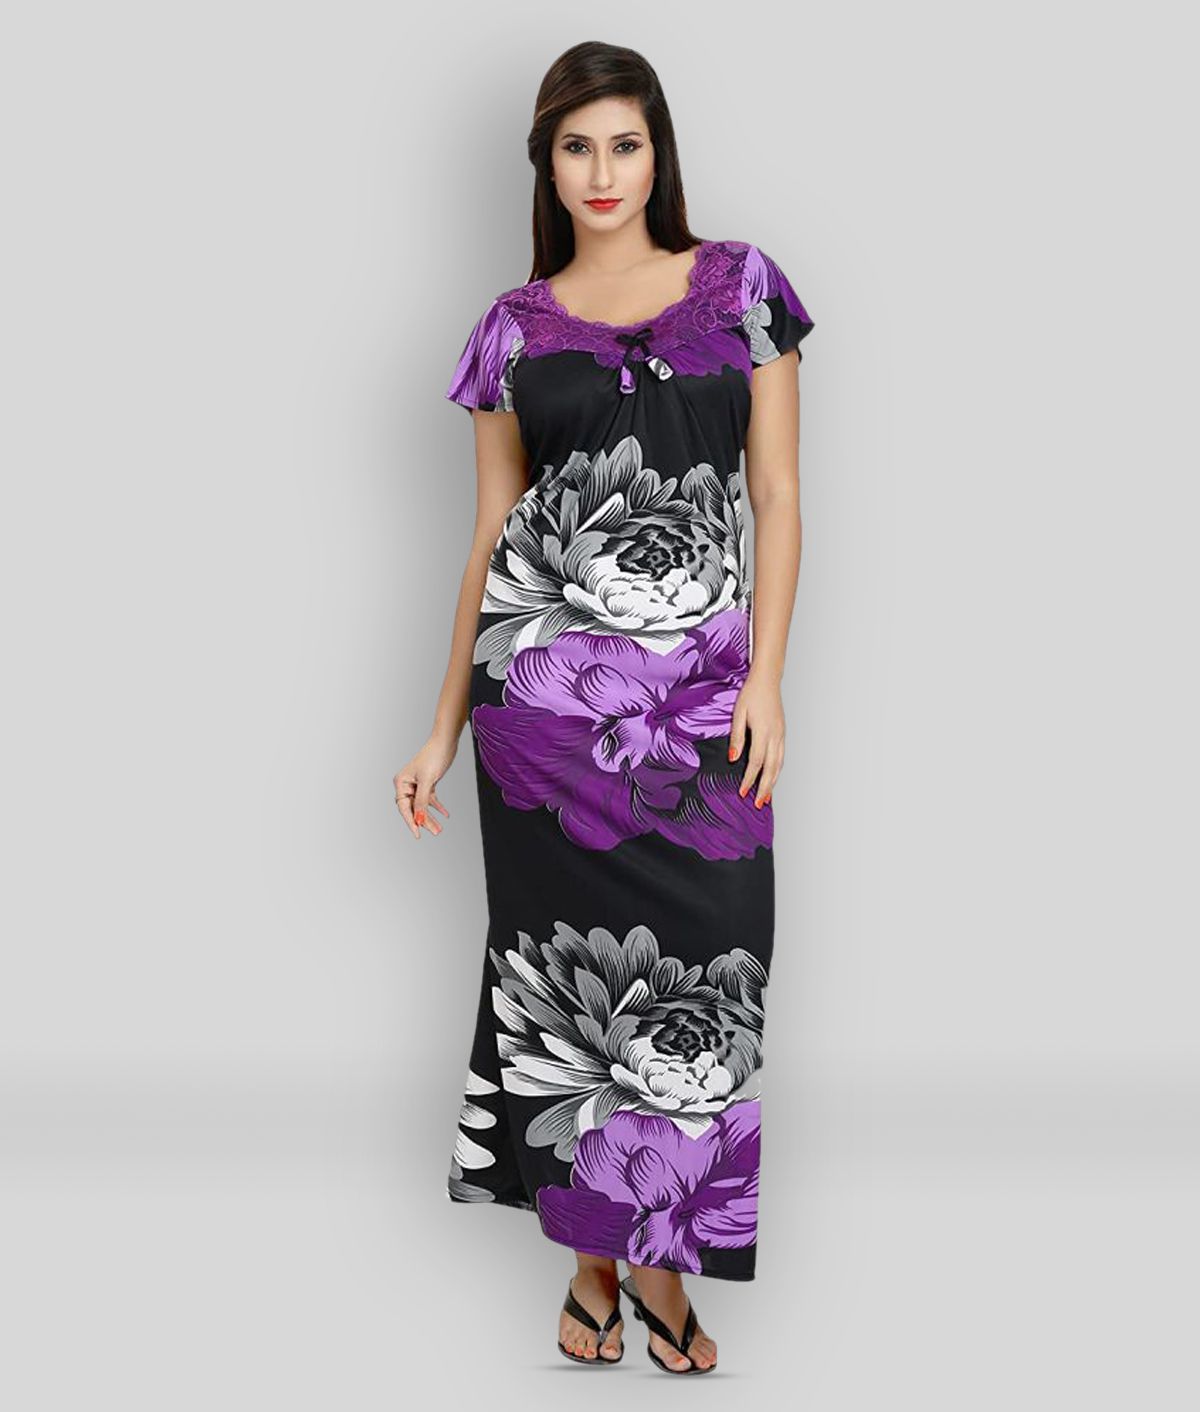     			Apratim - Multicolor Satin Women's Nightwear Nighty & Night Gowns ( Pack of 1 )